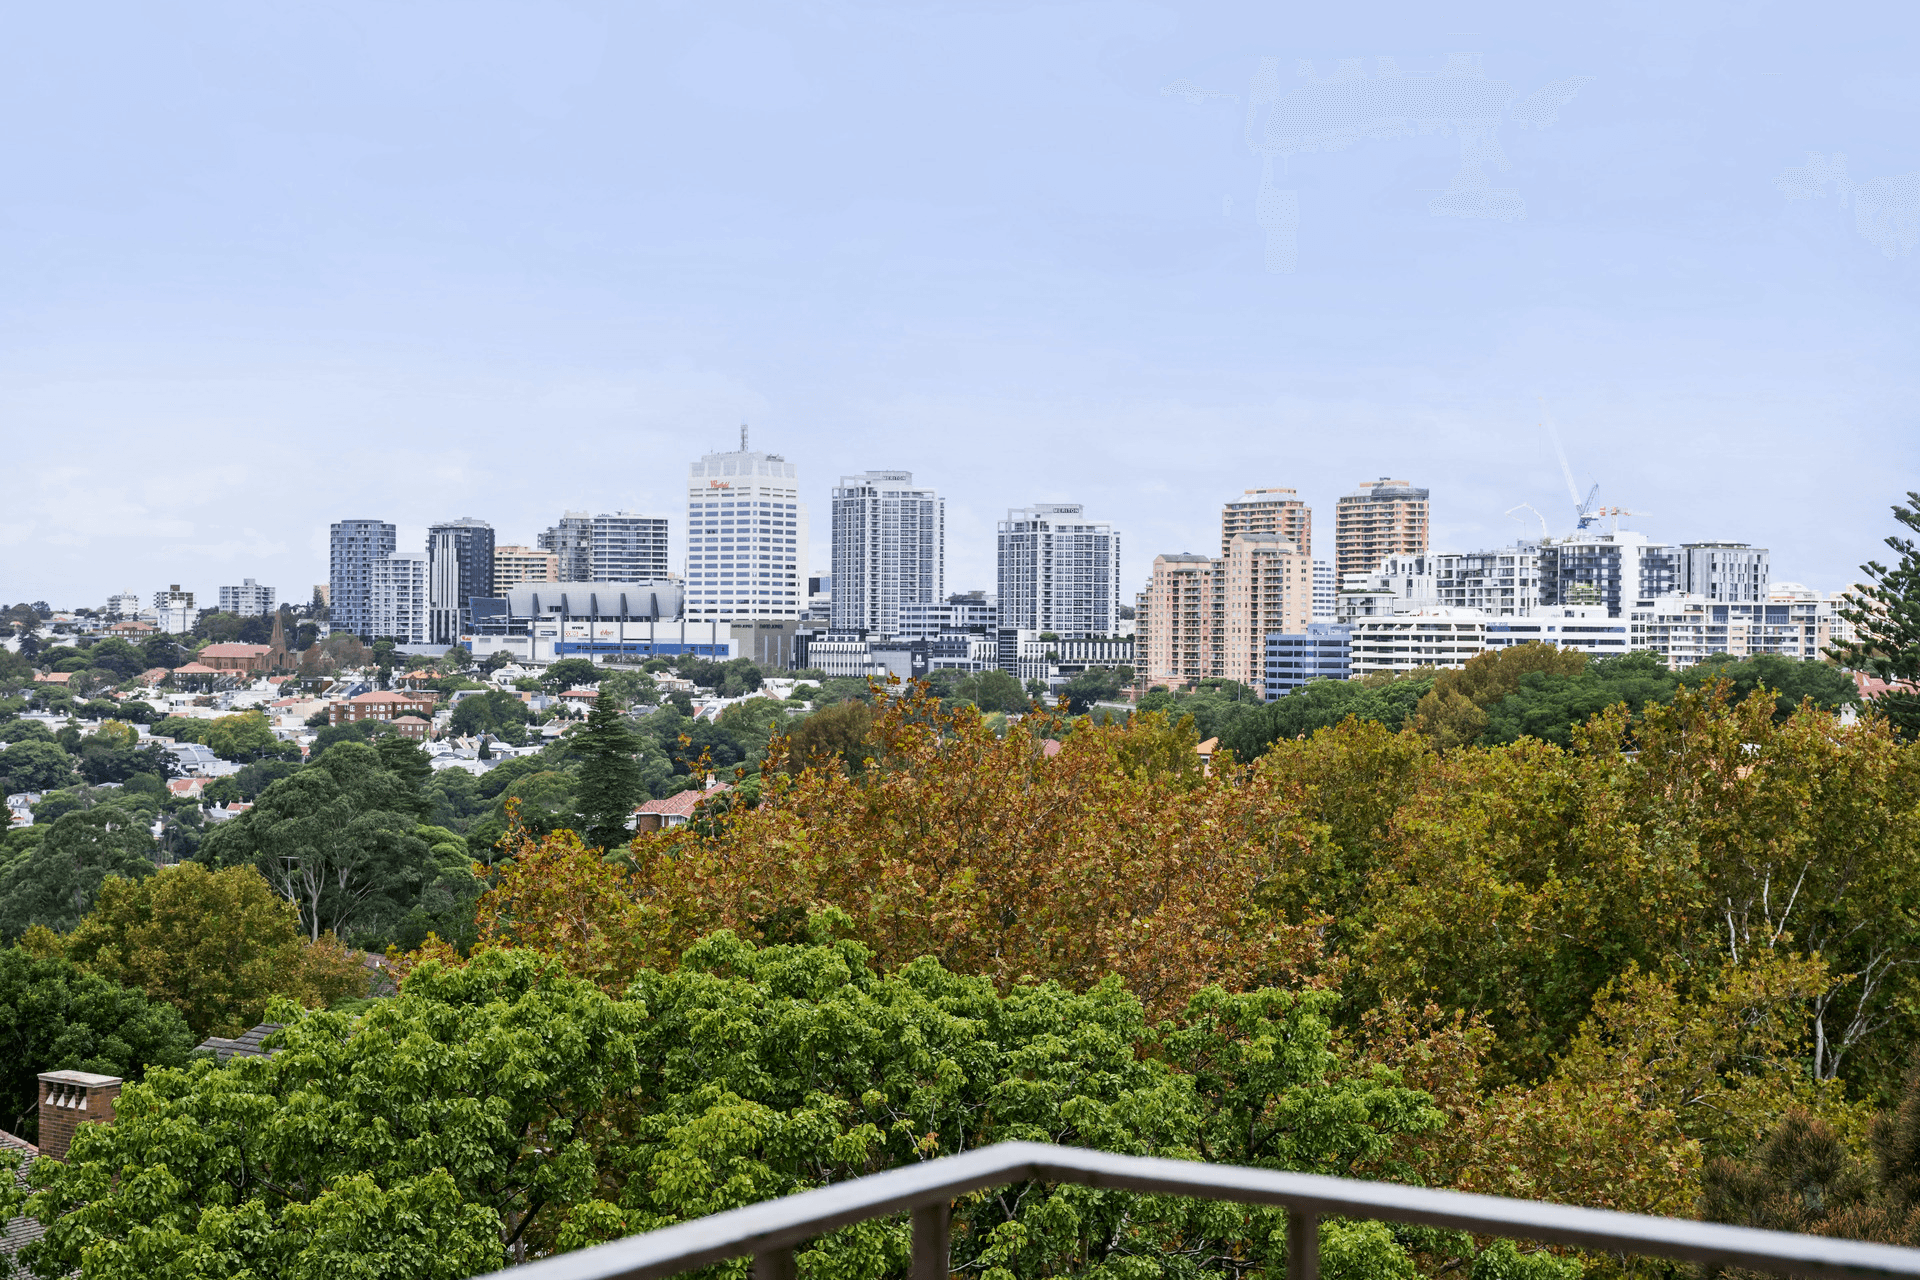 36/8 Fullerton Street, Woollahra, NSW 2025